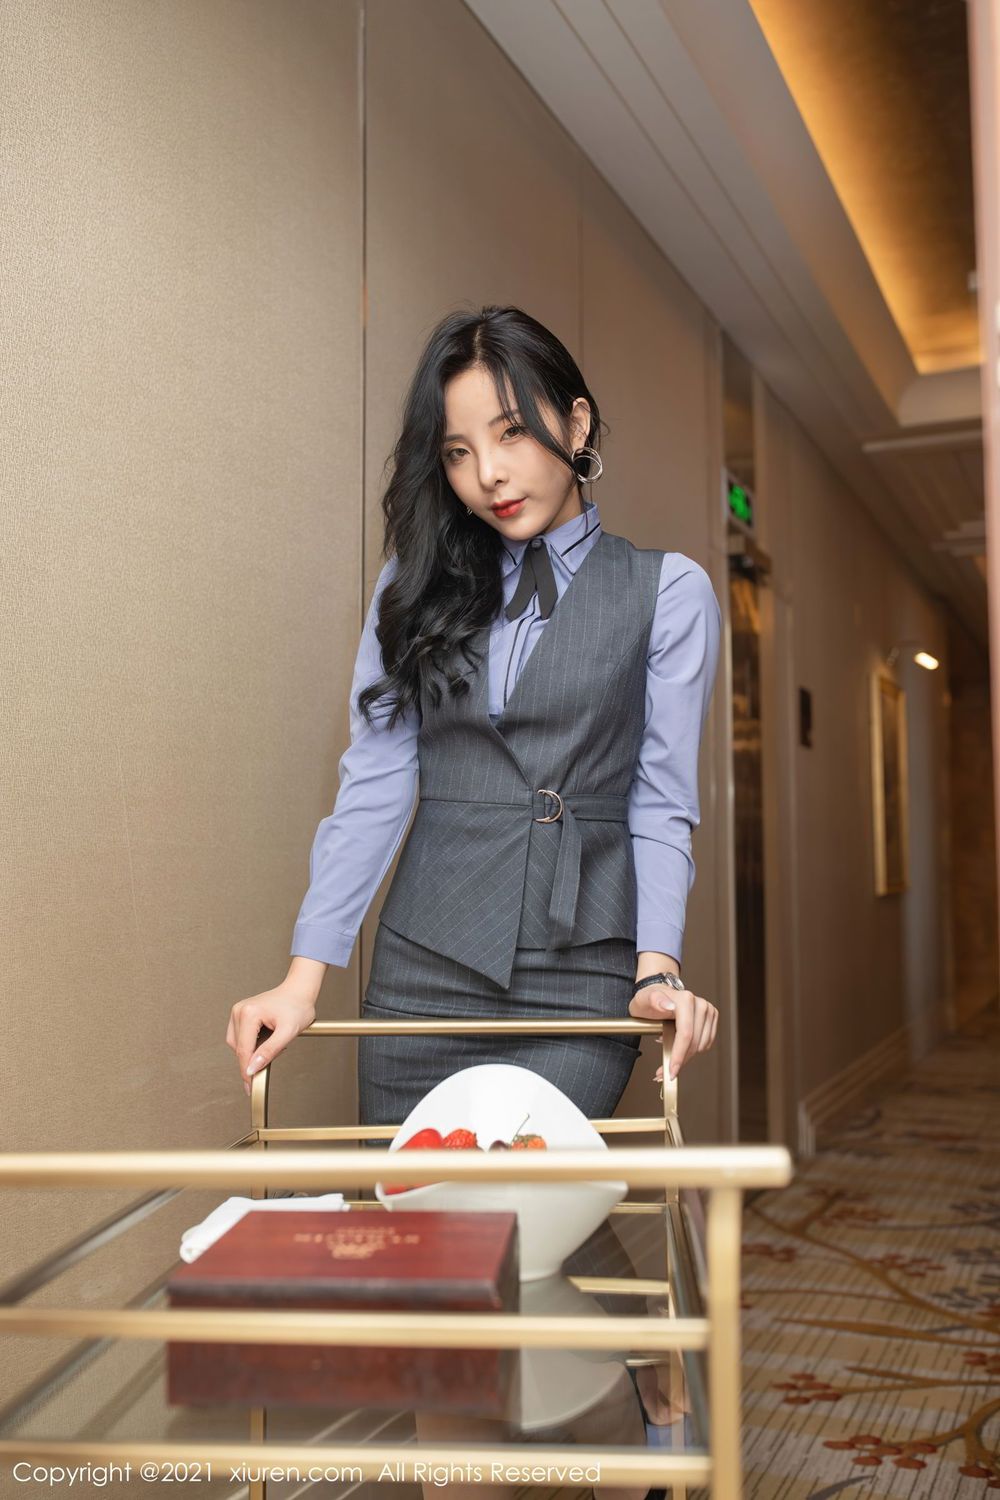 美女模特陈小喵丝袜美腿化身酒店管家主题性感写真